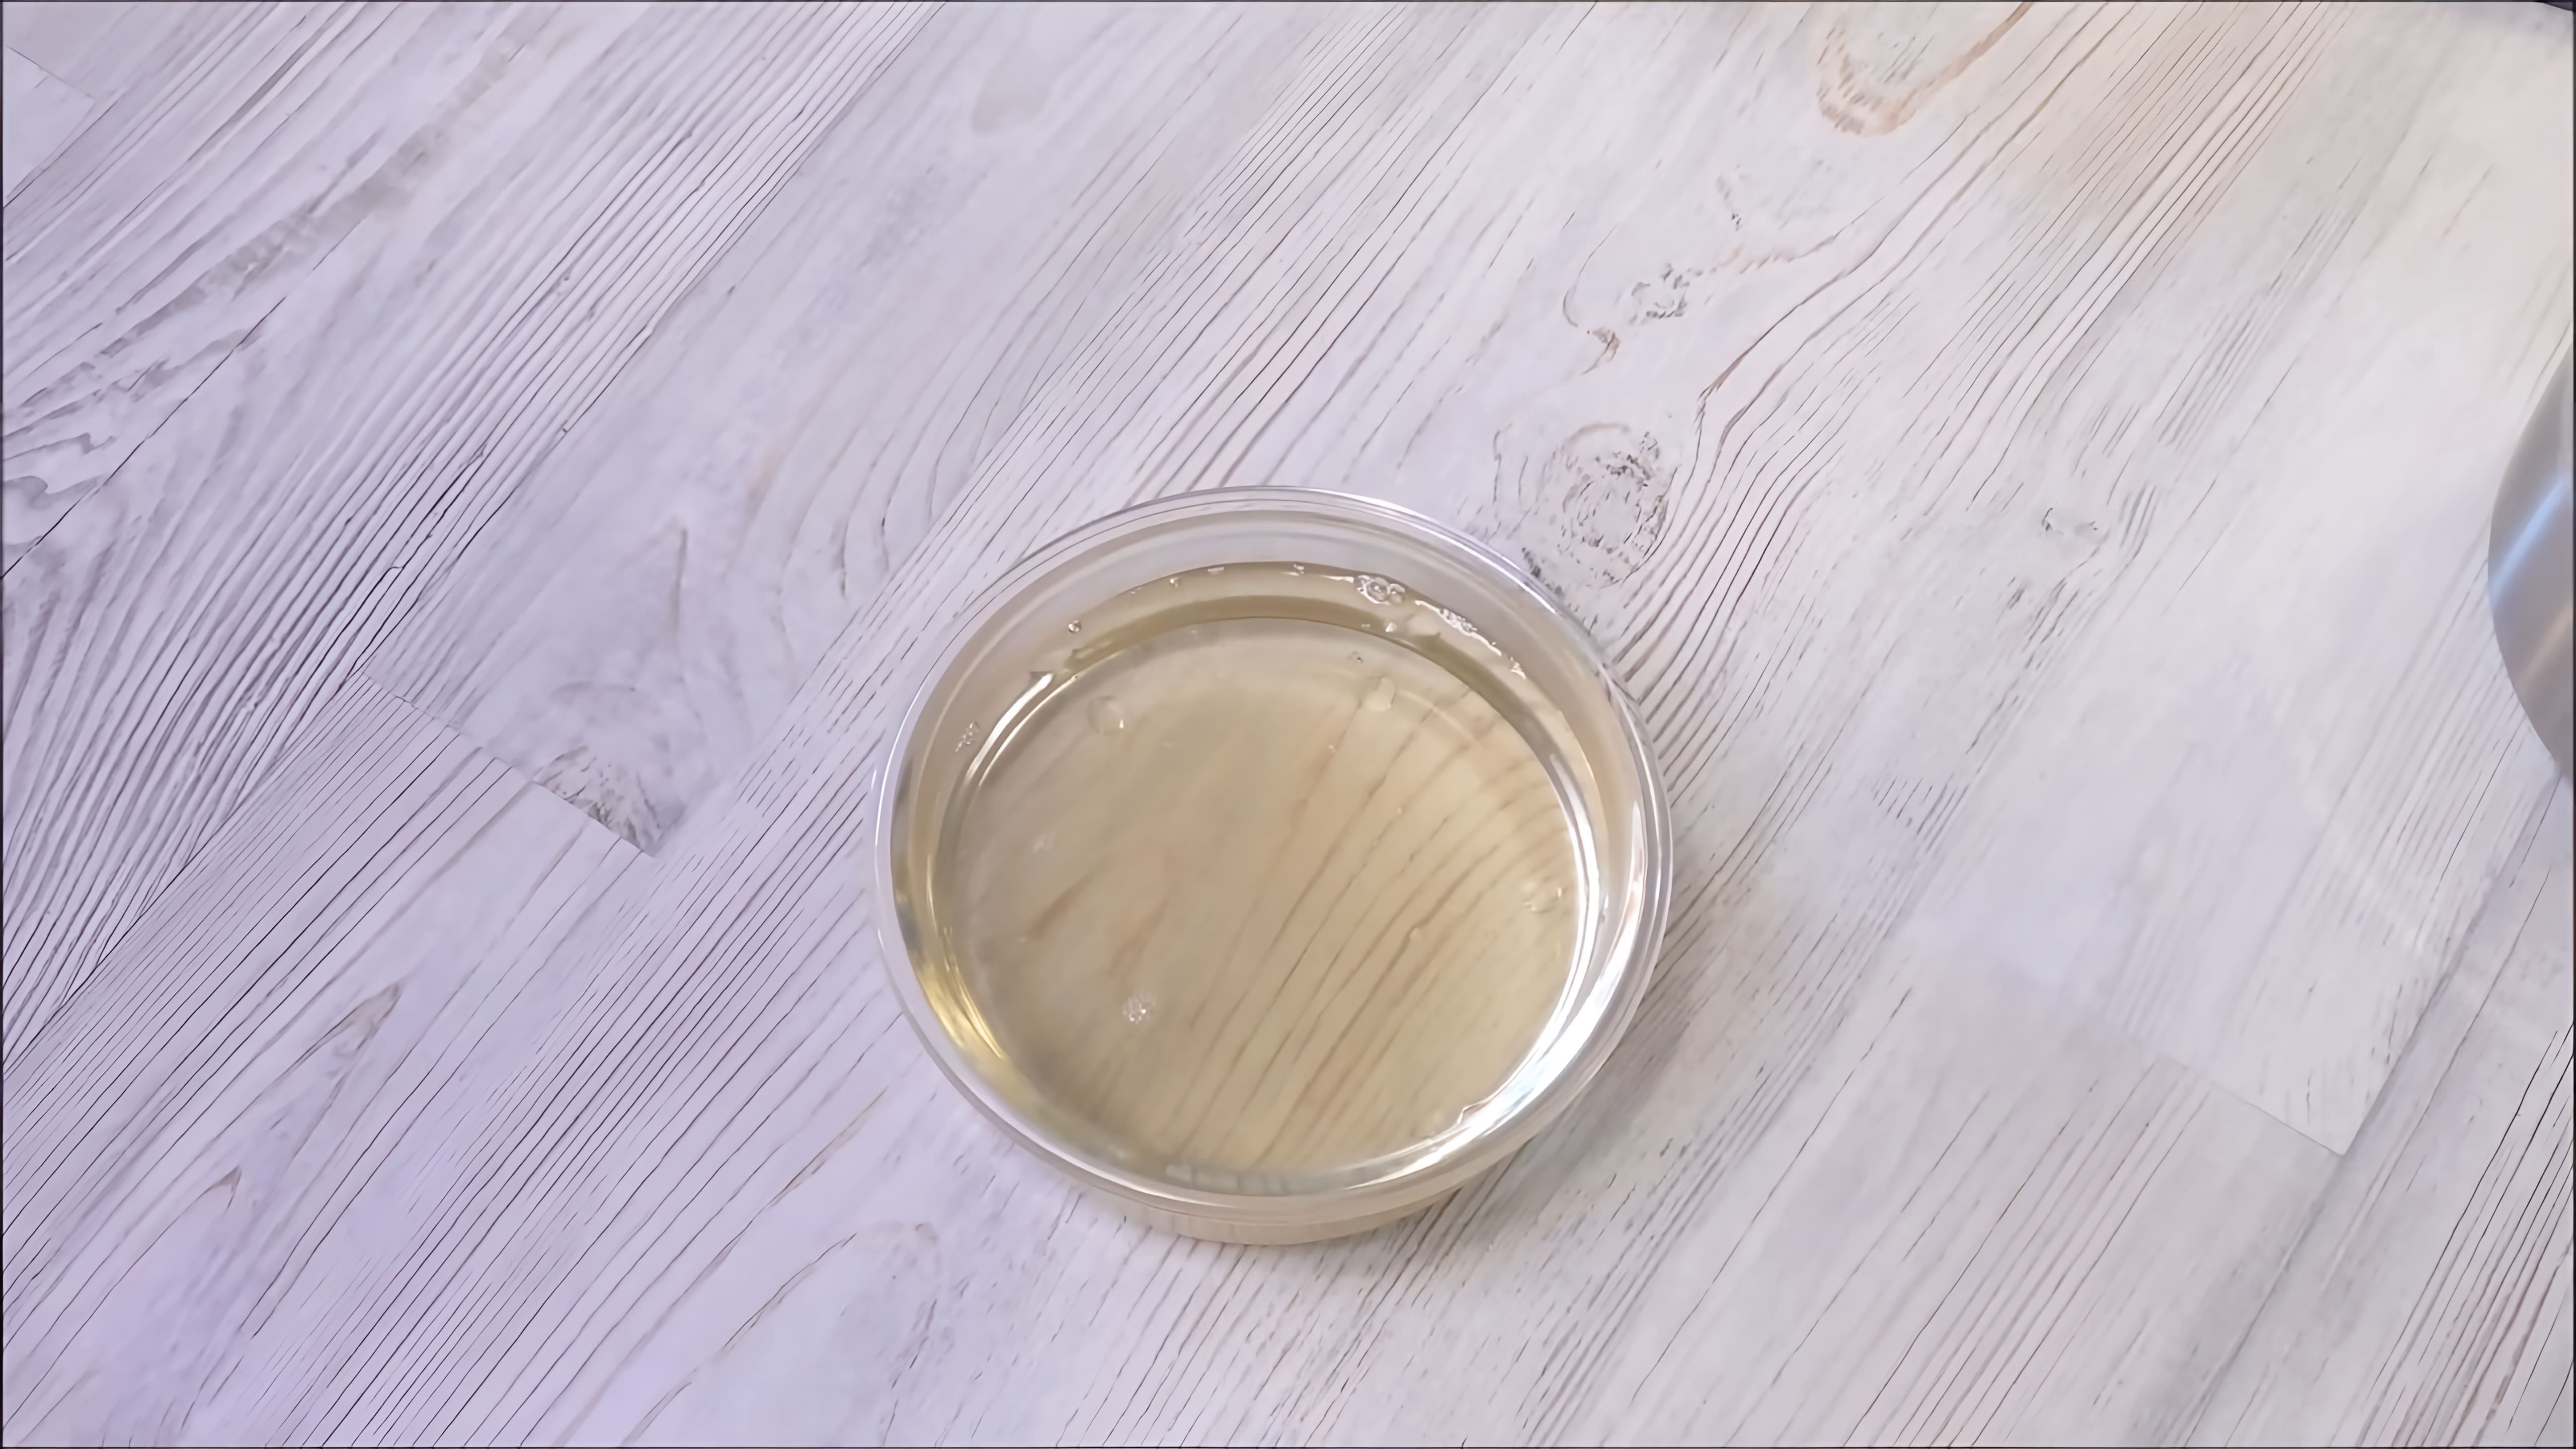 В данном видео демонстрируется процесс приготовления сахарного сиропа 30В, который широко используется в кондитерском деле для пропитки бисквитов